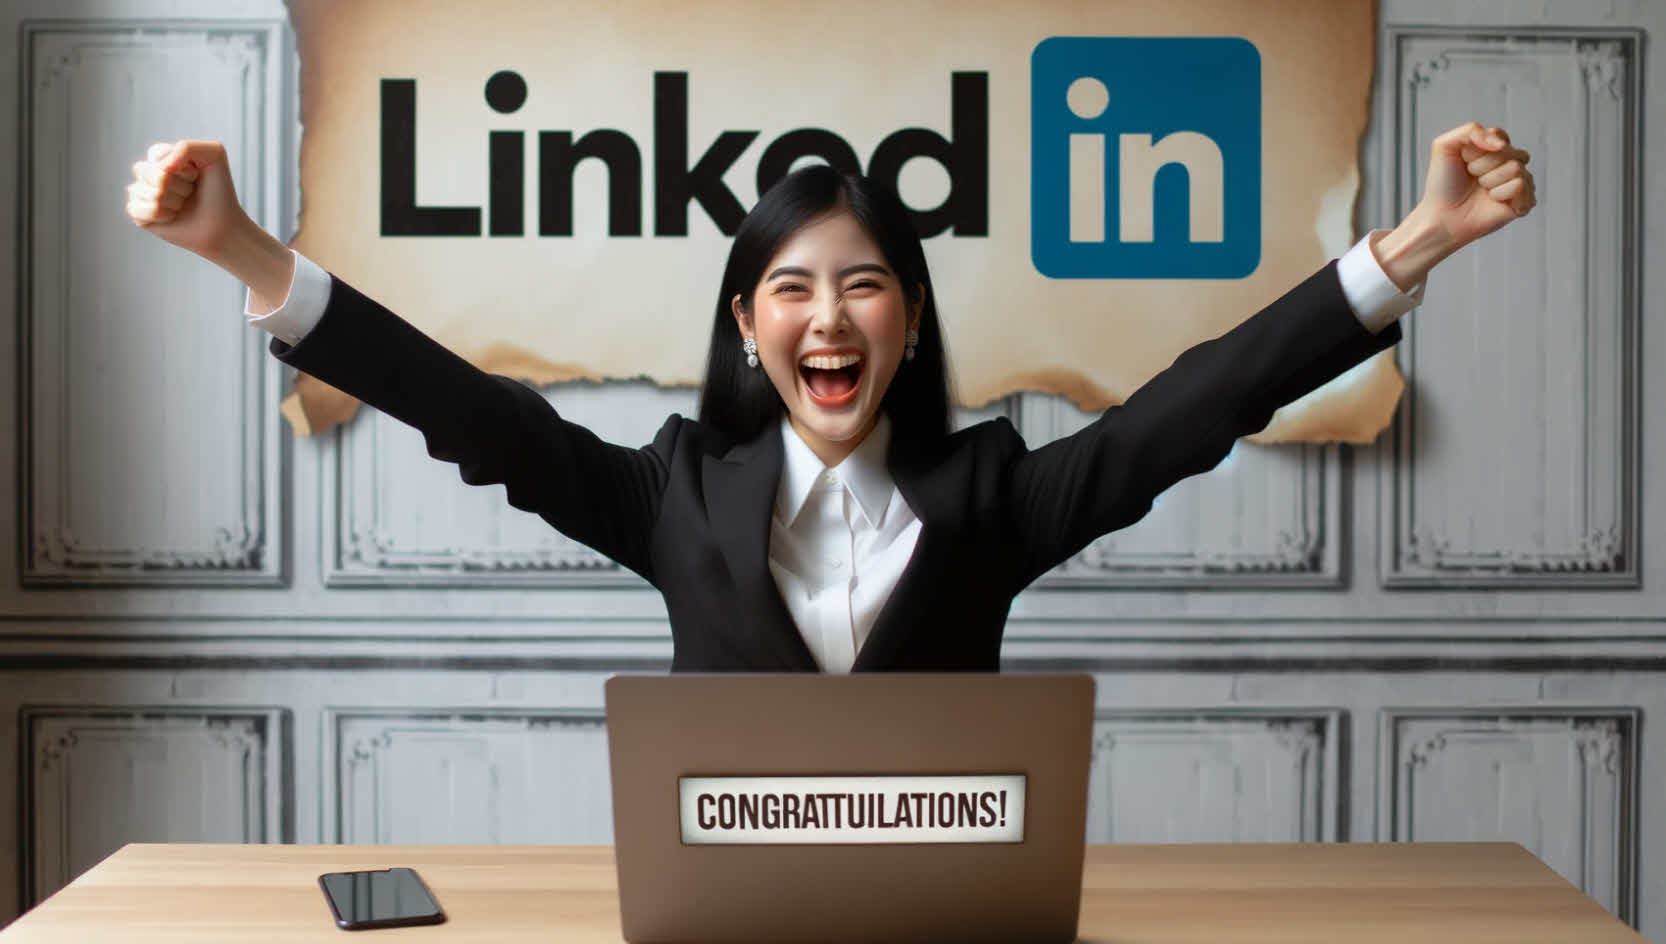 Dünya’da 8 kişiden biri işini LinkedIn’den buluyor!